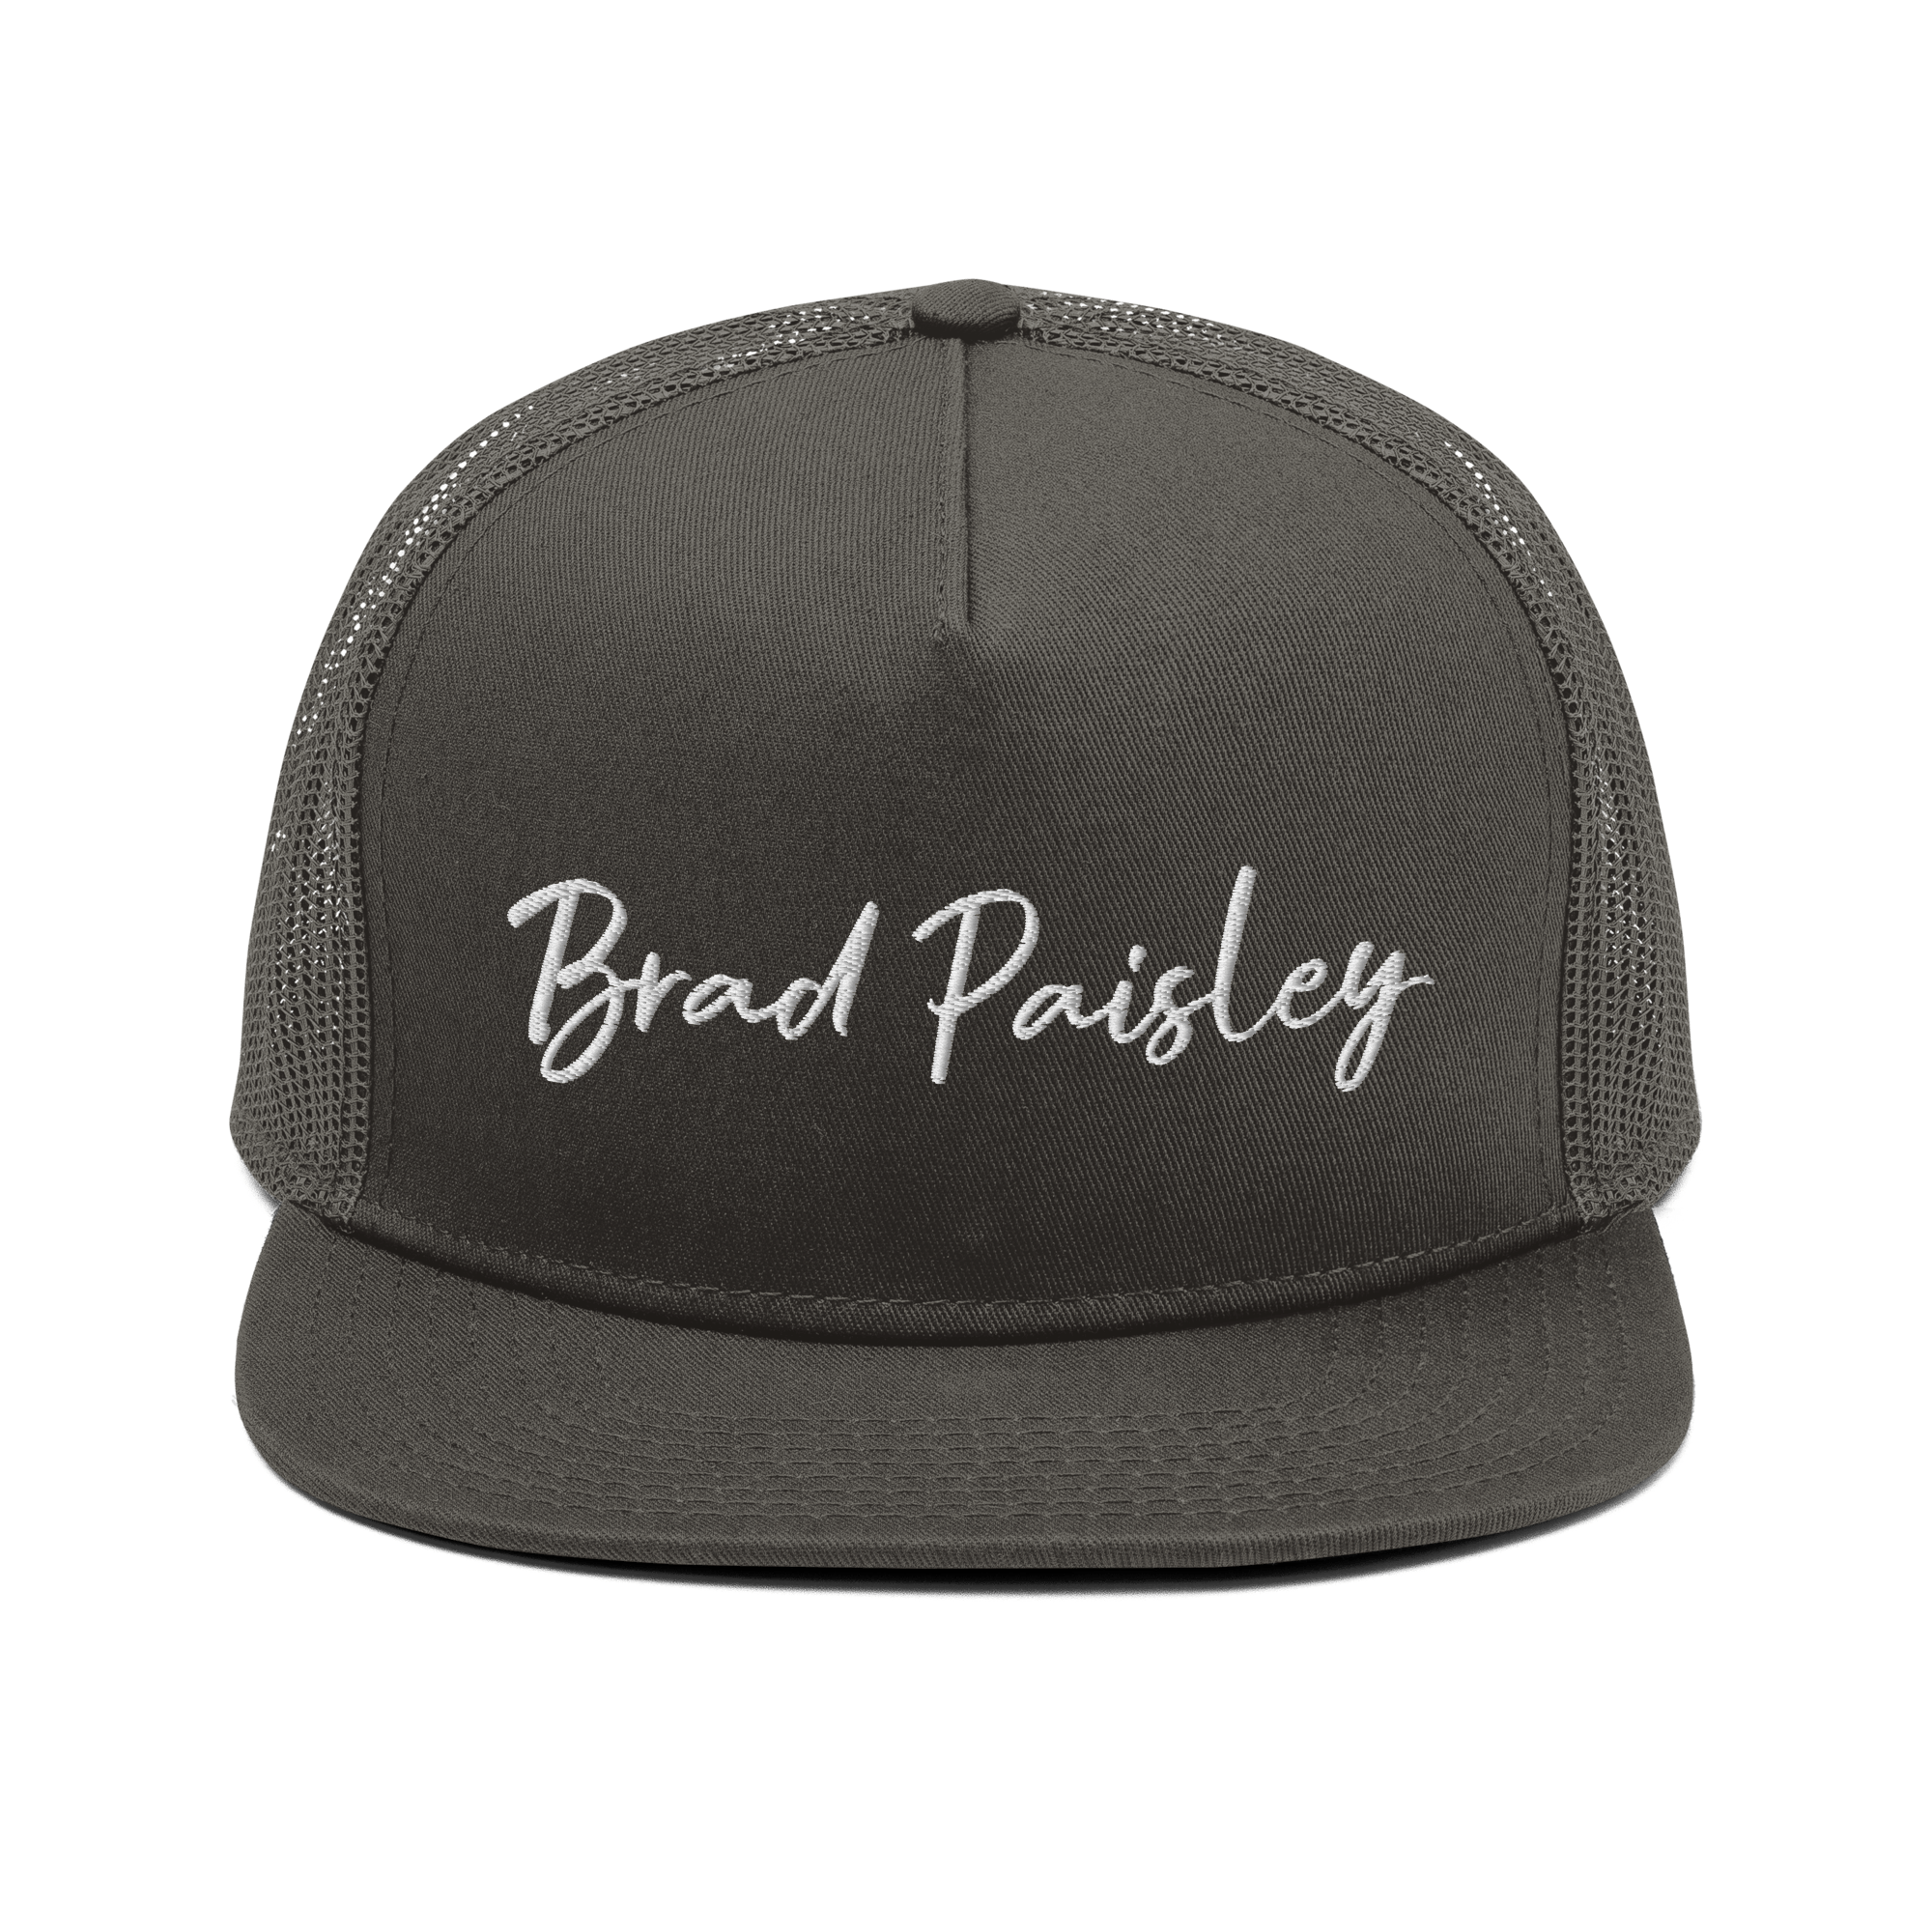 Brad Paisley - keps